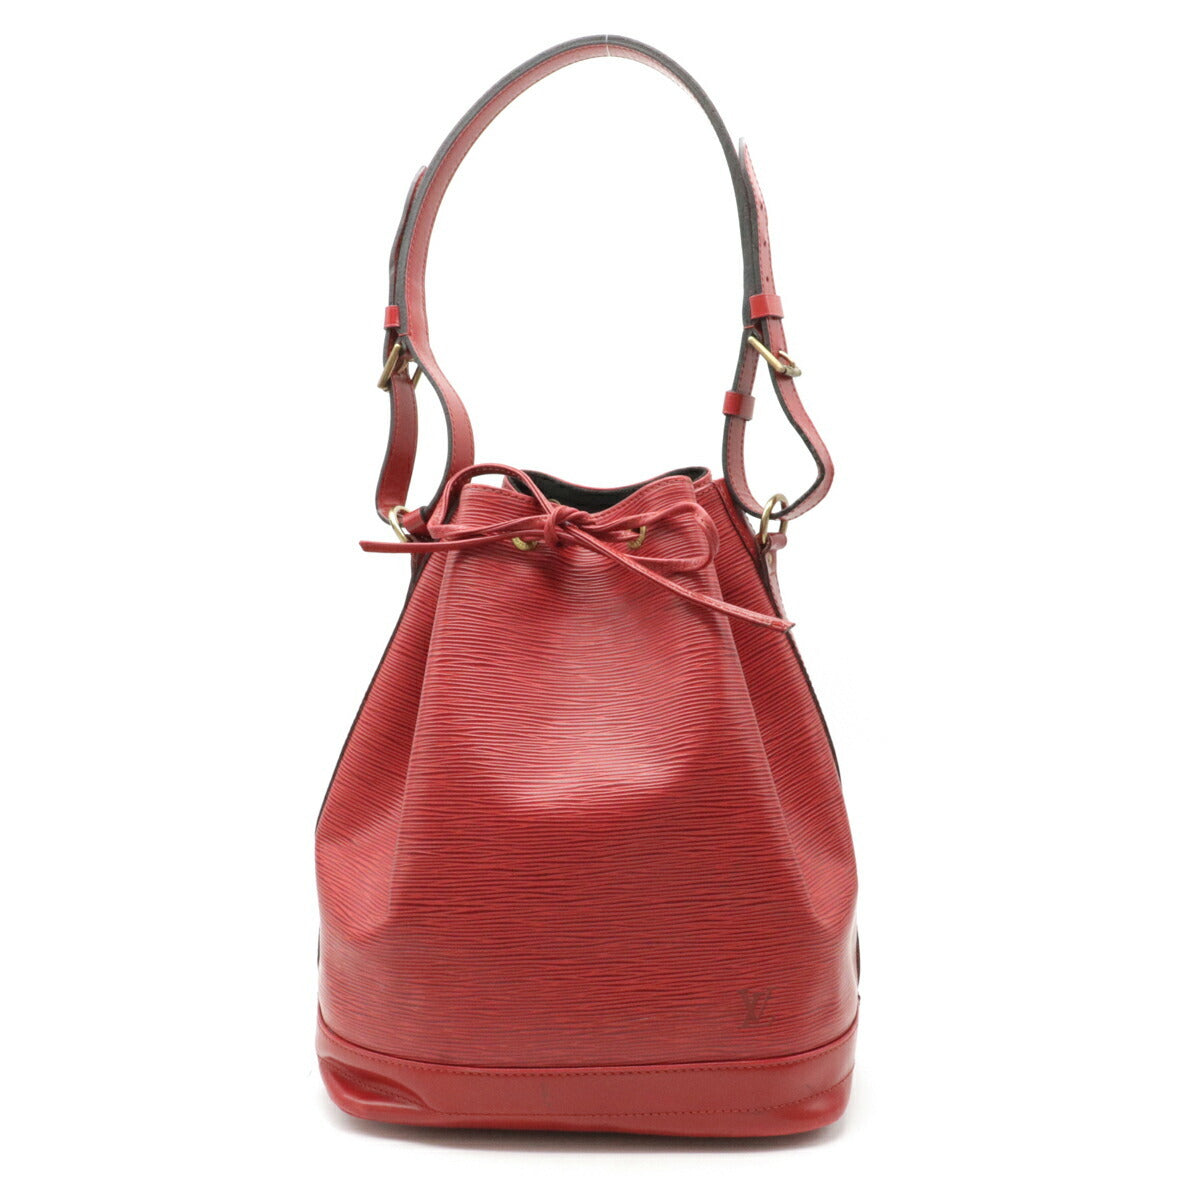 Vuitton Epi Noe Large Red Leather Bucket Bag Vintage Good 